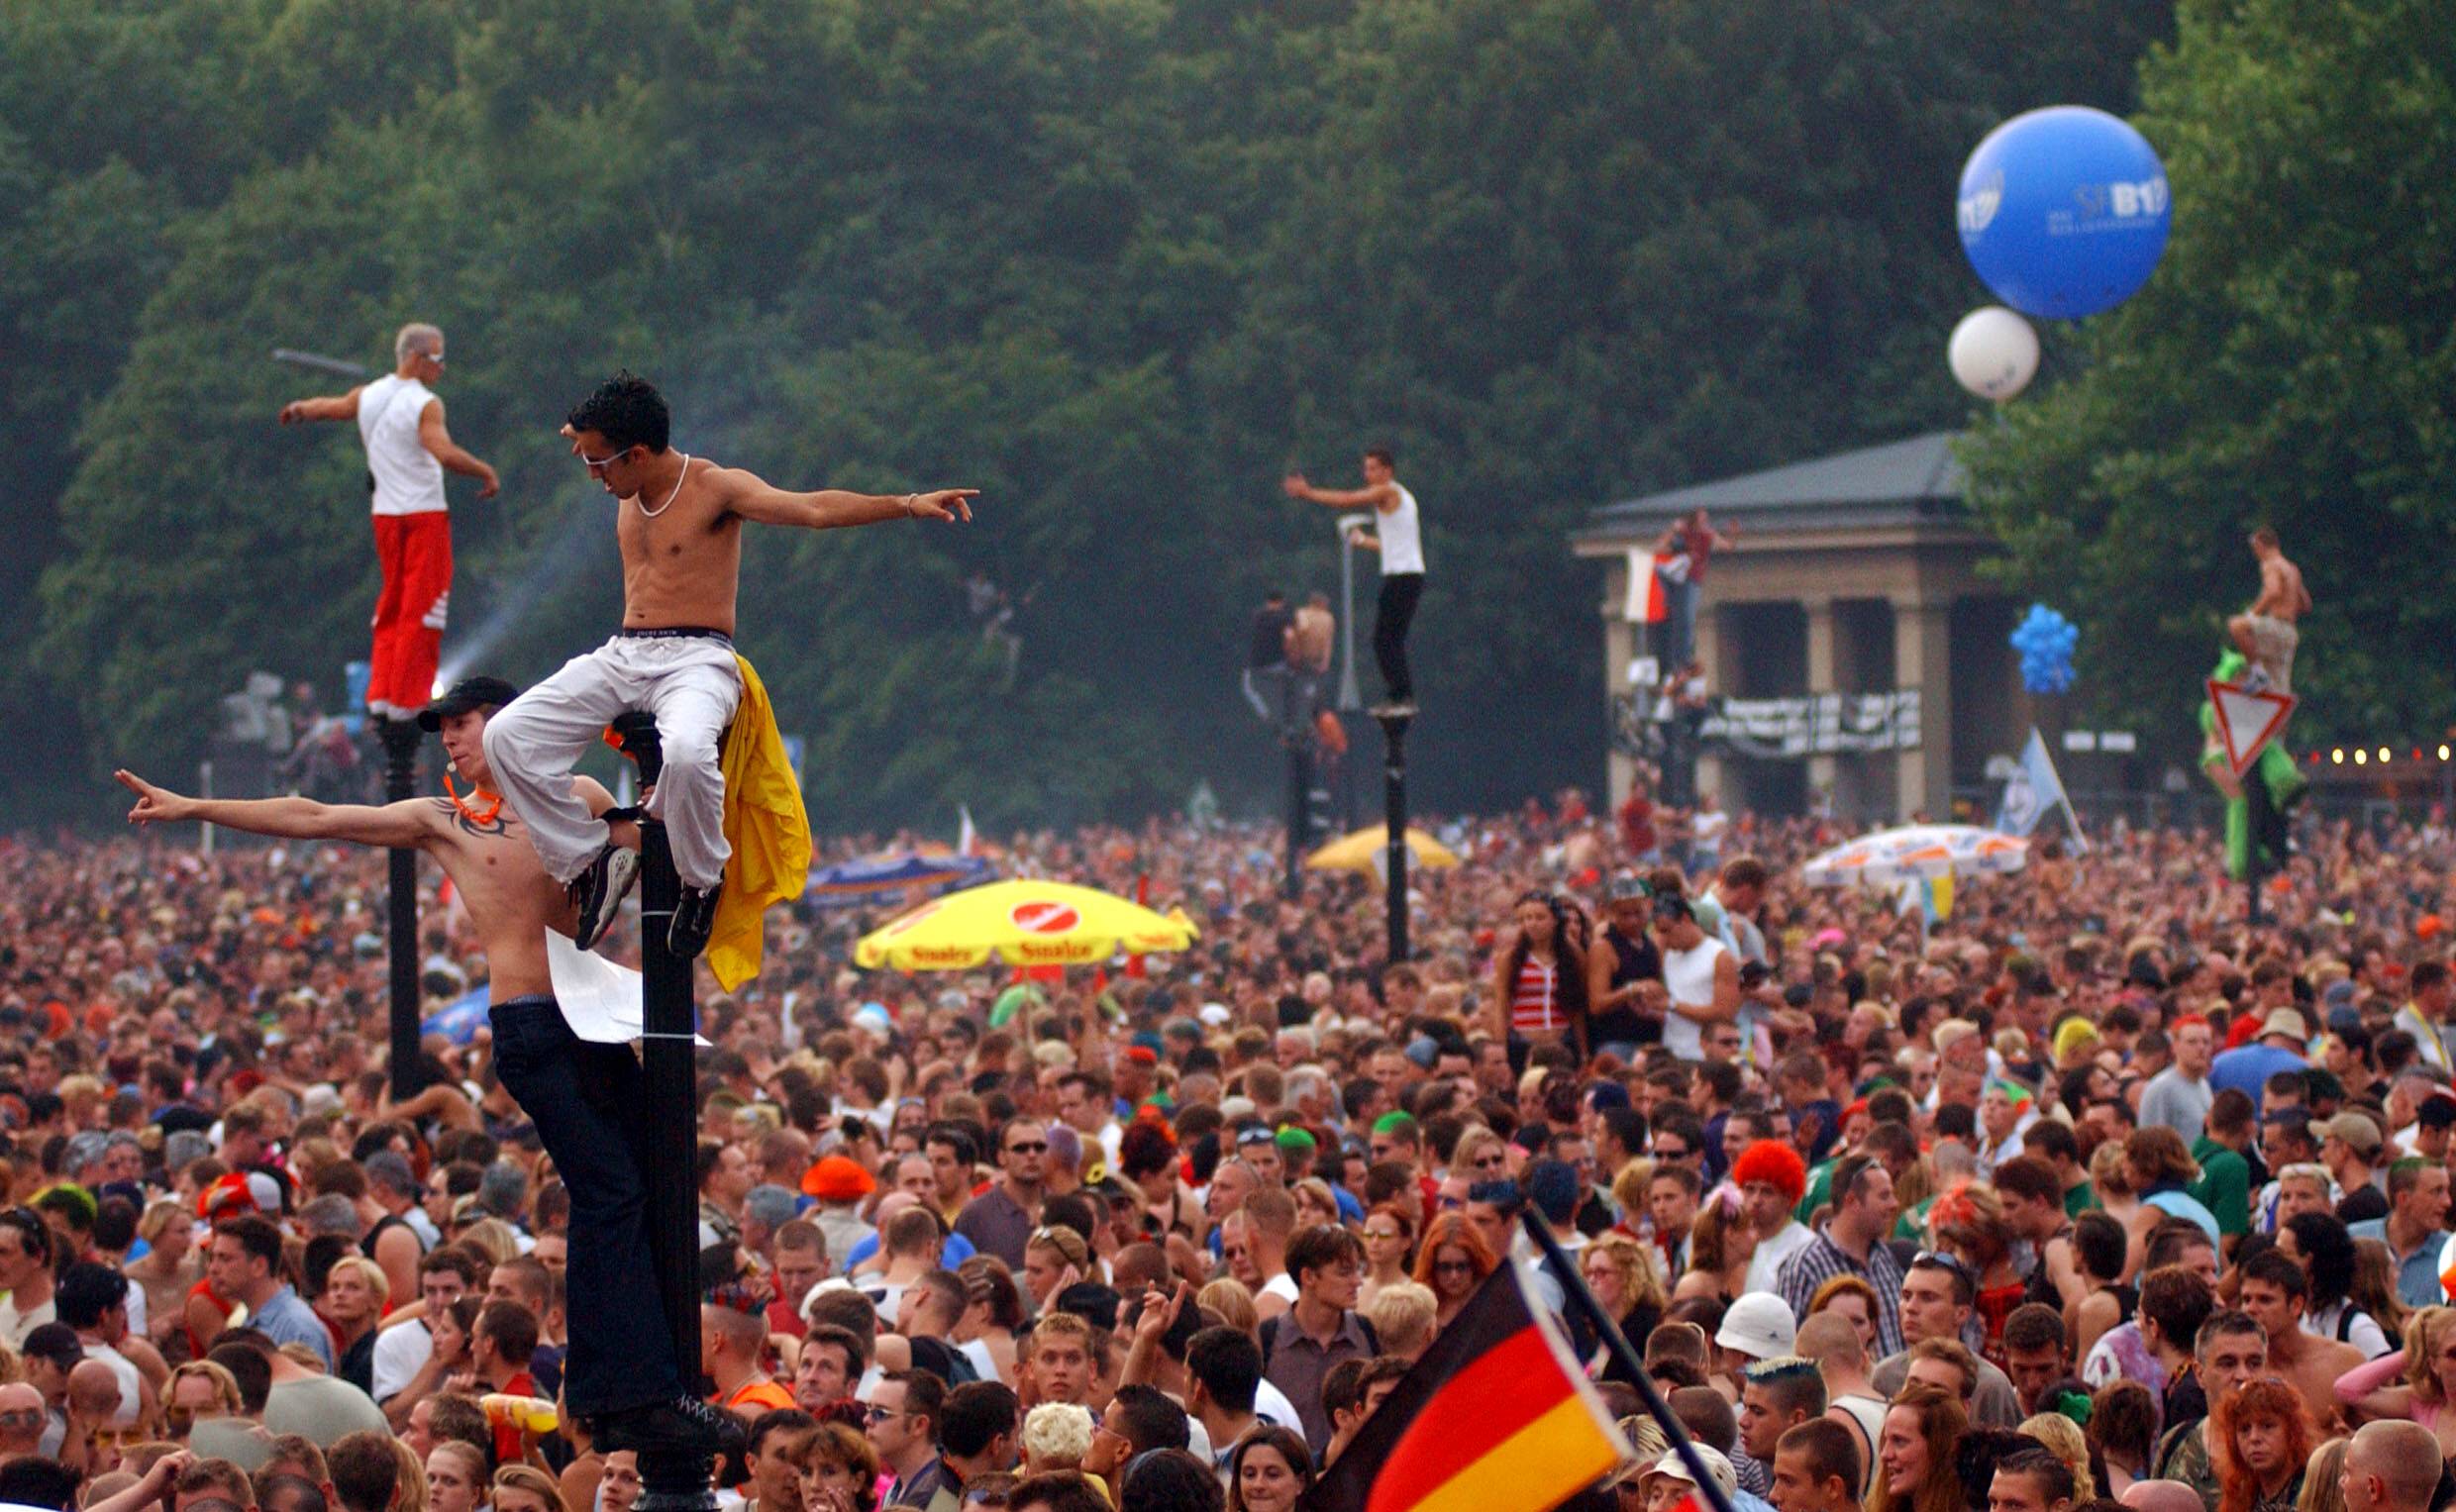 A Love Parade: A Szeretet Ünnepe Berlinben és a Technó Kultúra Világméretű Hatása